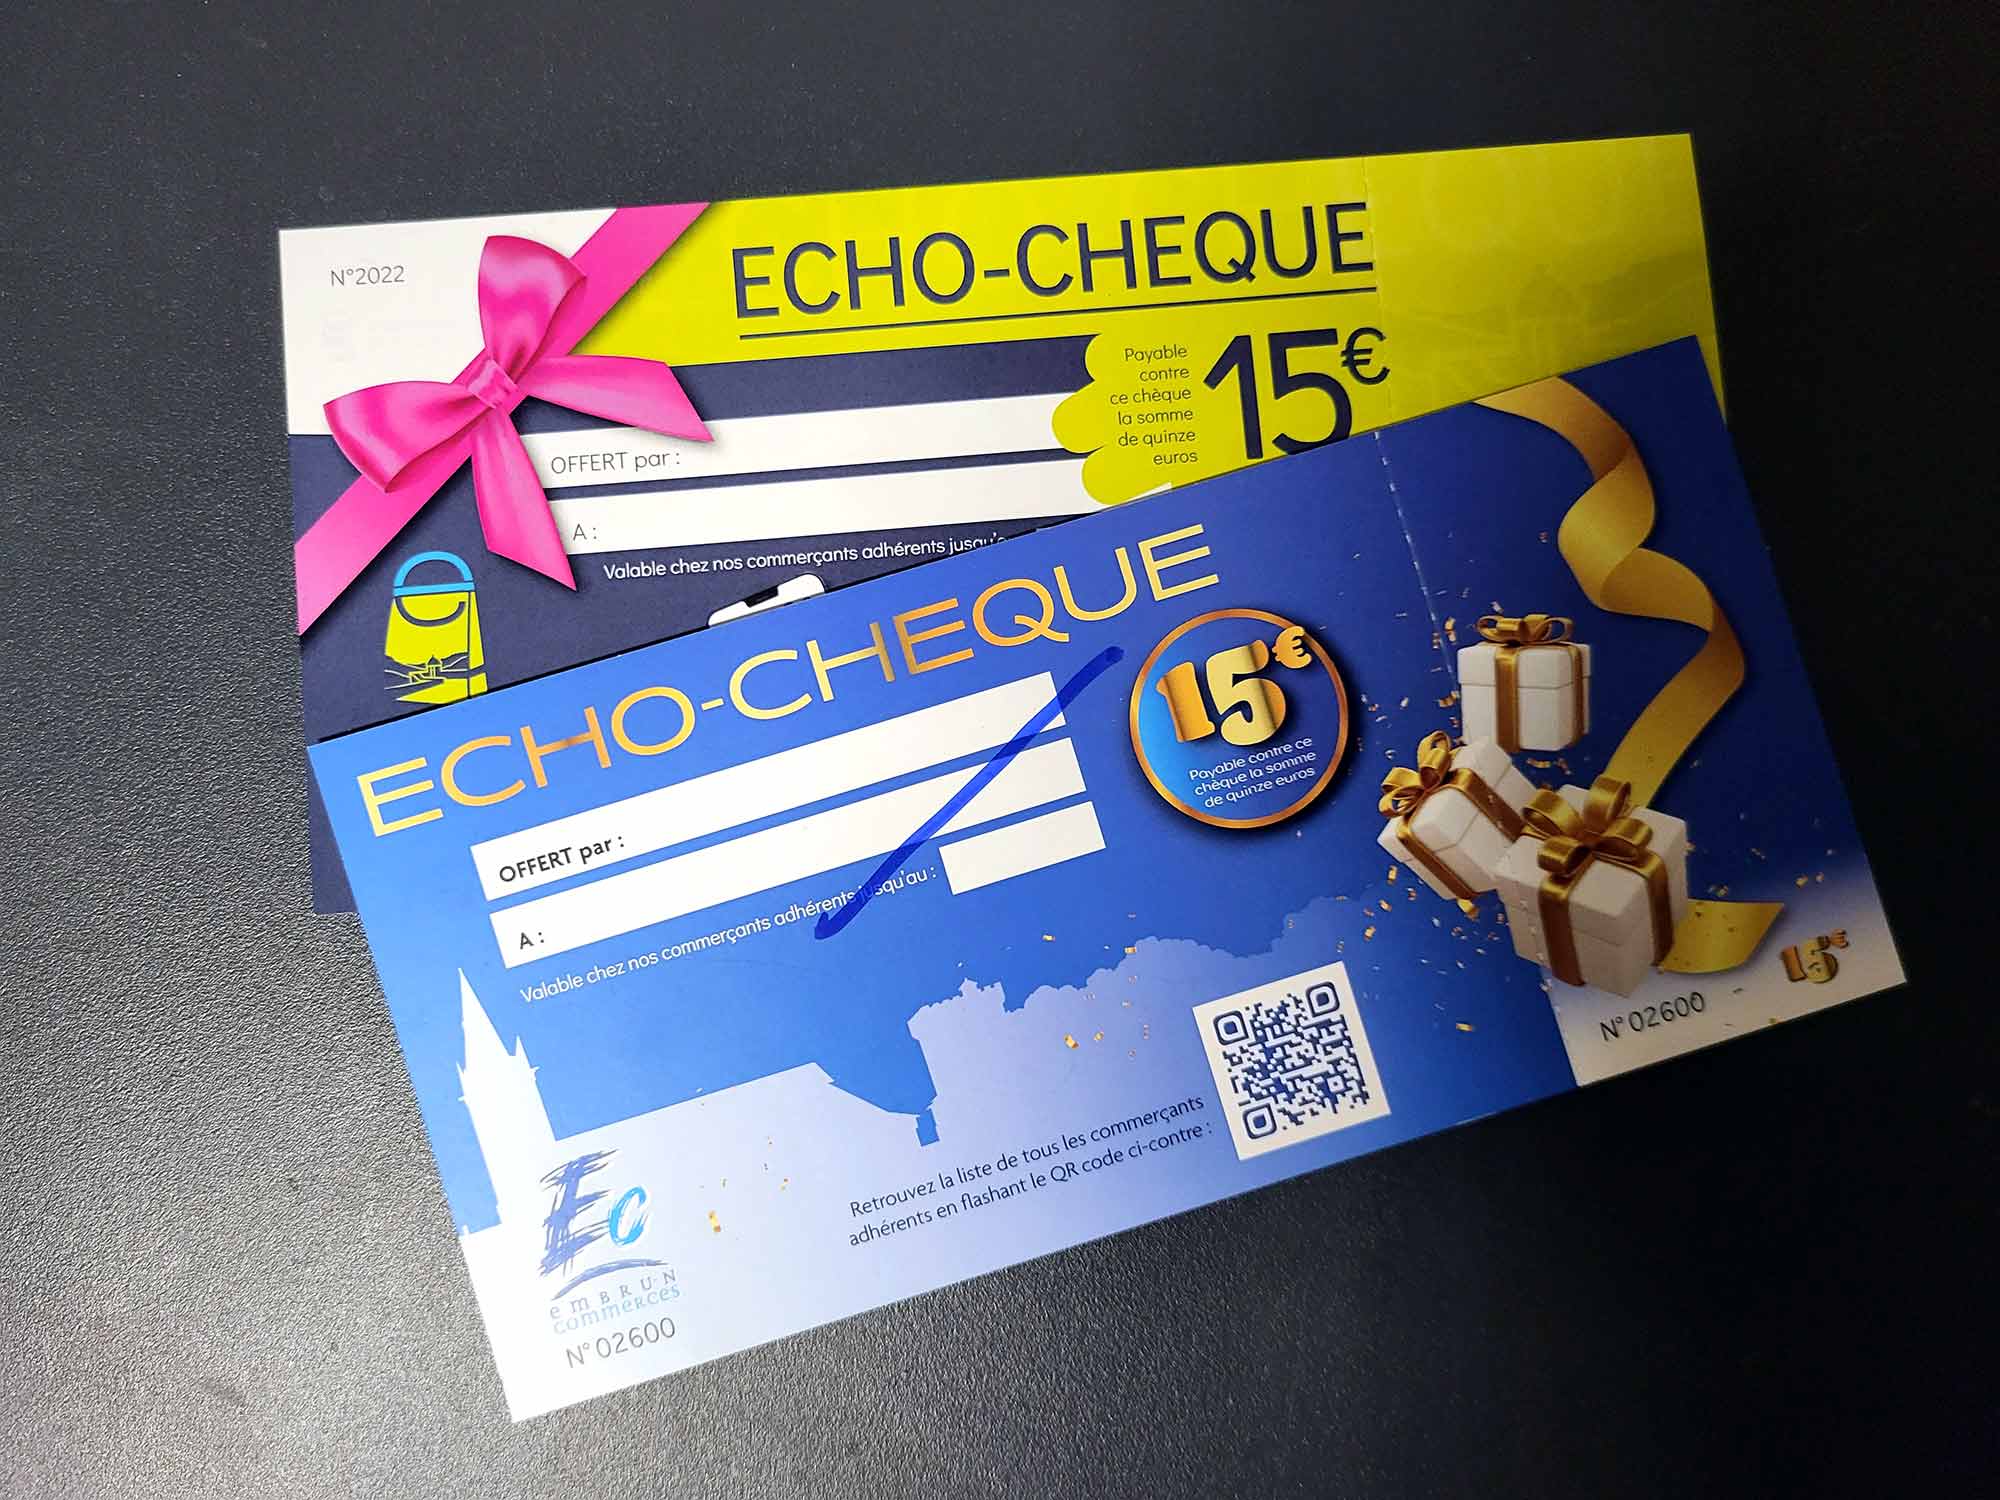 Echo cheque imprimerie 05 3